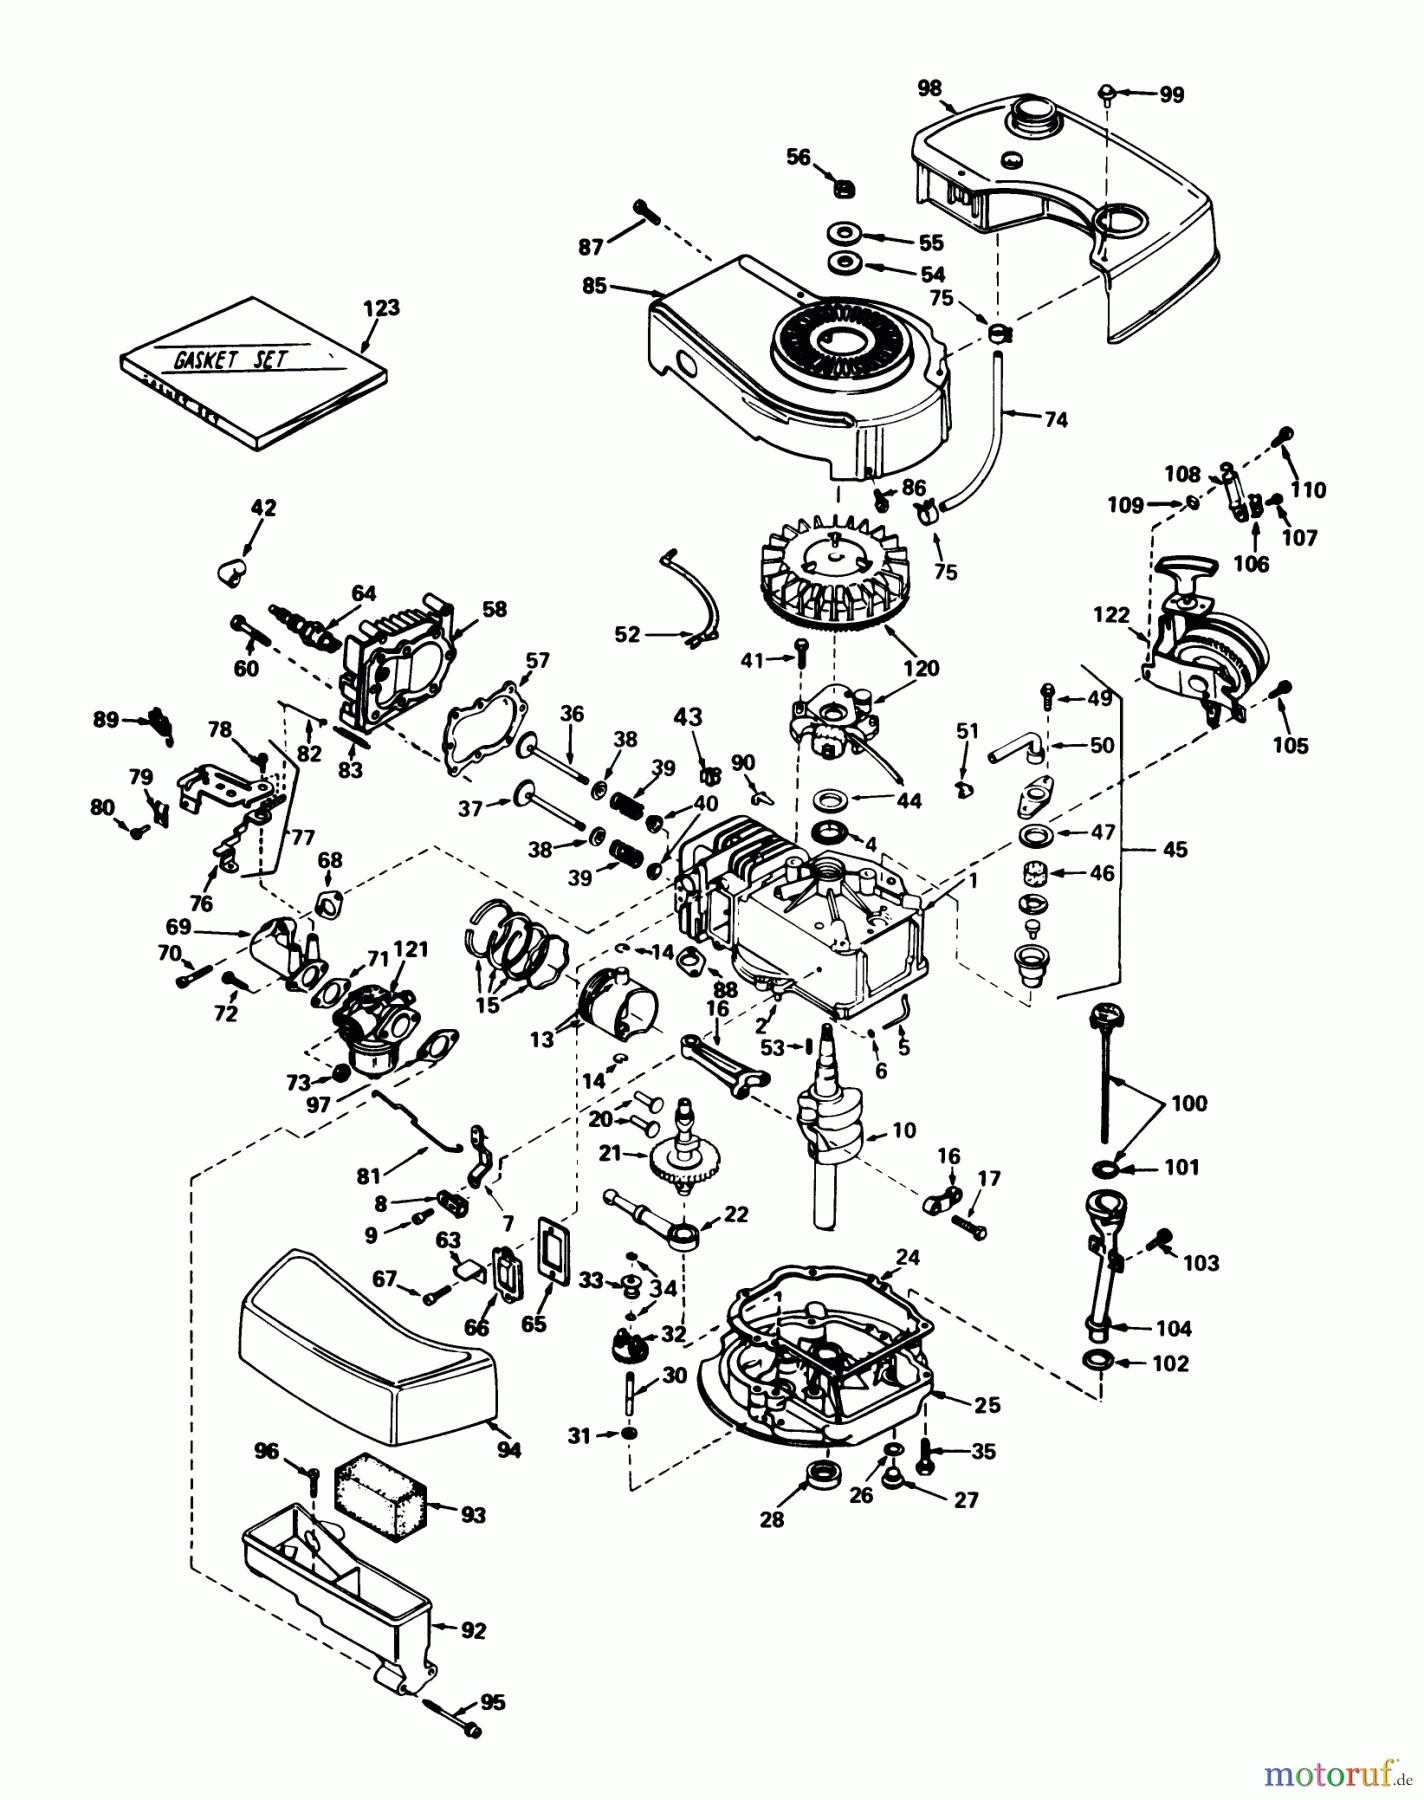  Toro Neu Mowers, Walk-Behind Seite 1 20575 - Toro Lawnmower, 1978 (8007501-8999999) ENGINE TECUMSEH MODEL TNT 100-10049B